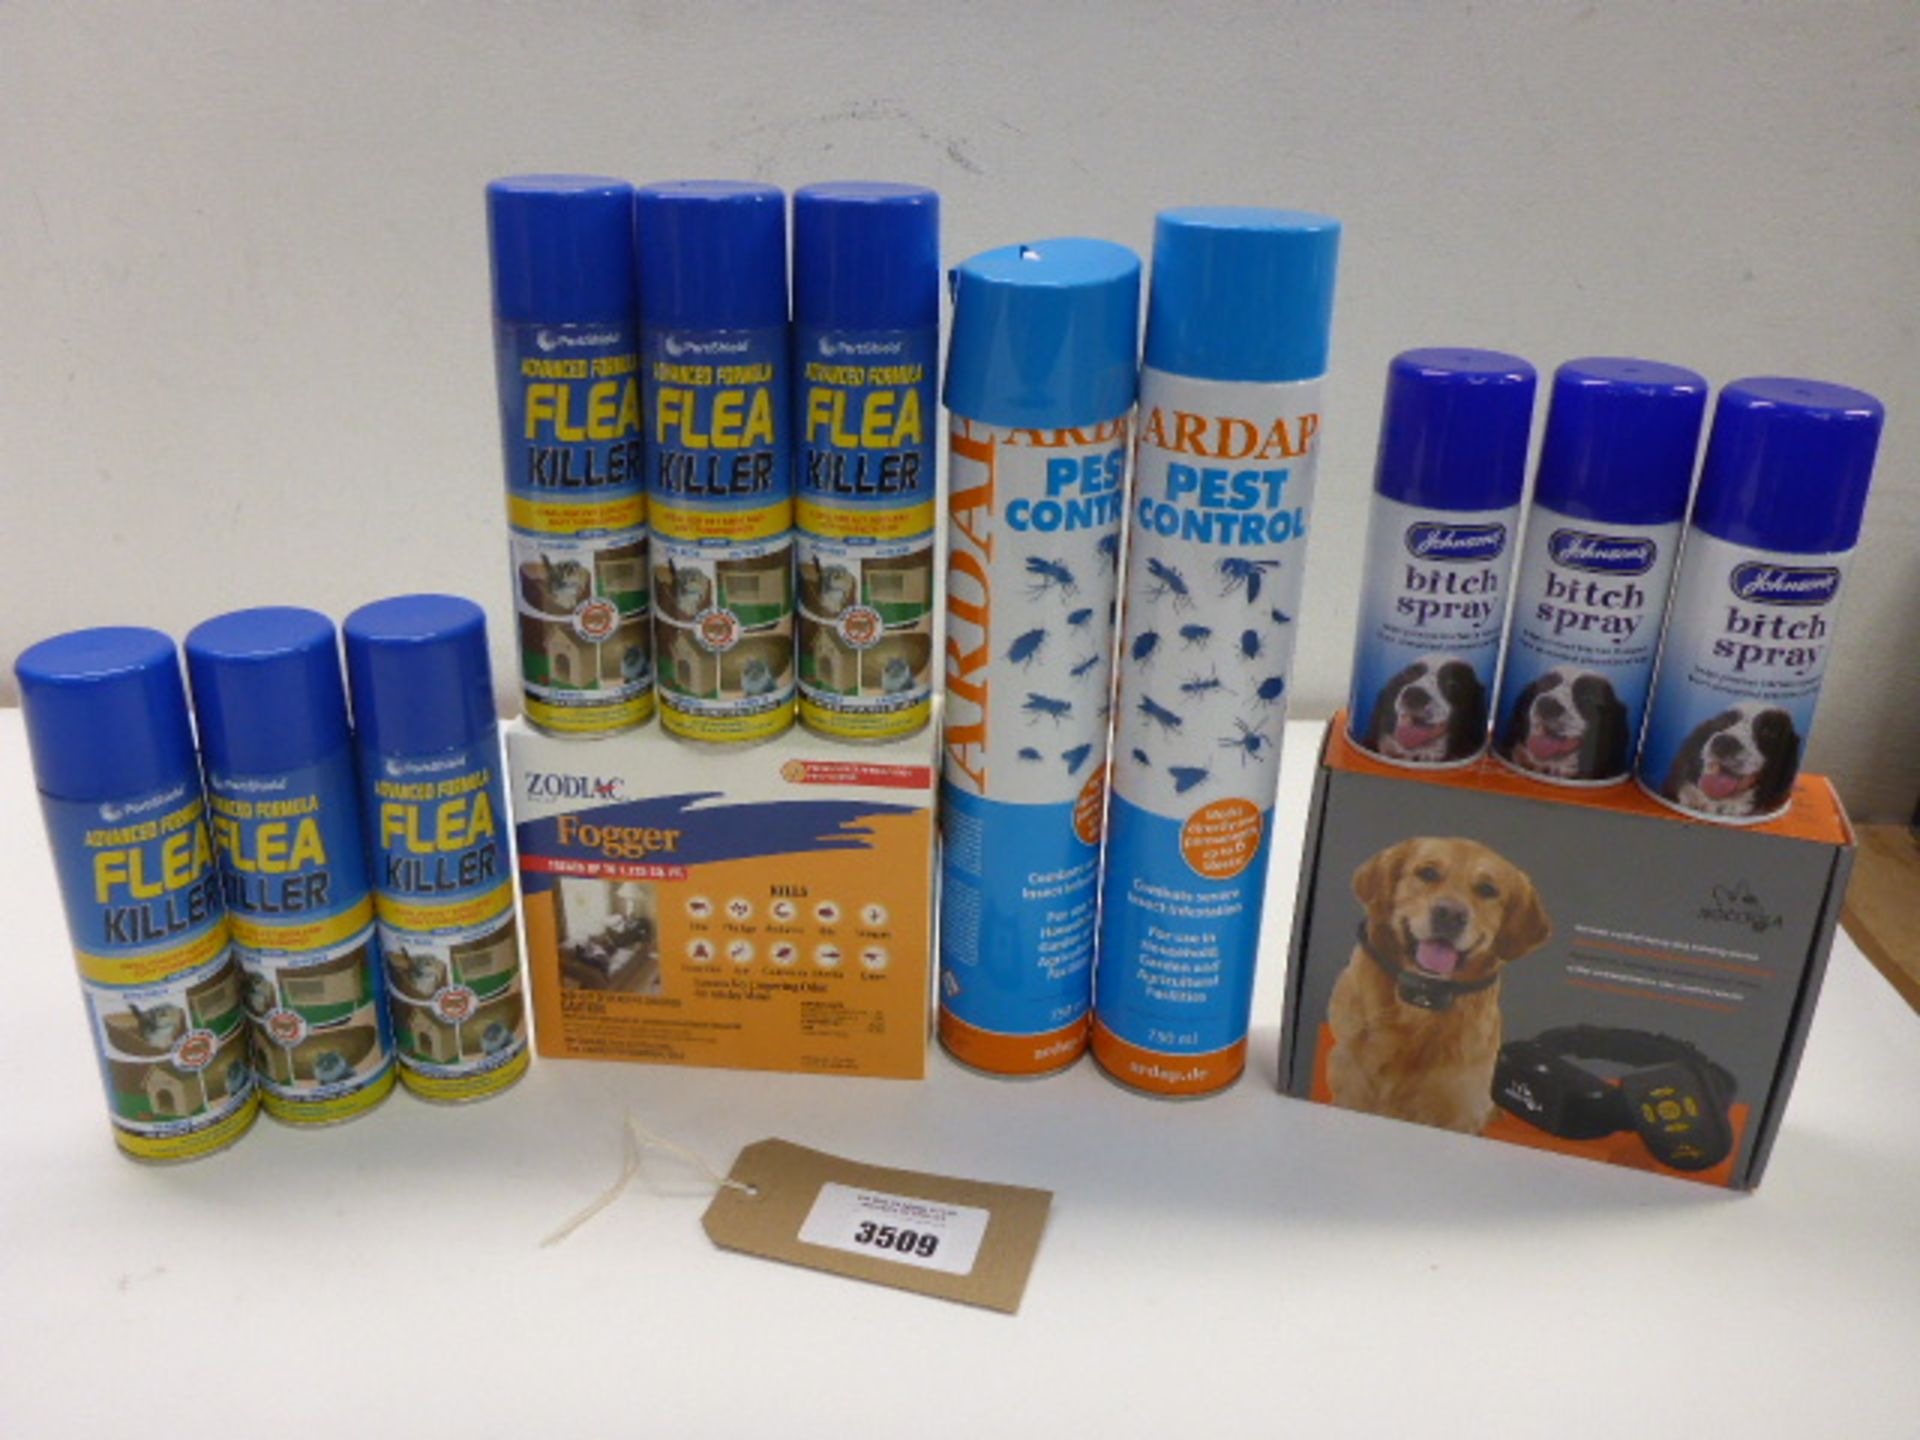 Flea & pest control sprays, room fogger, Nocciola r/c spray dog training device and Bitch sprays